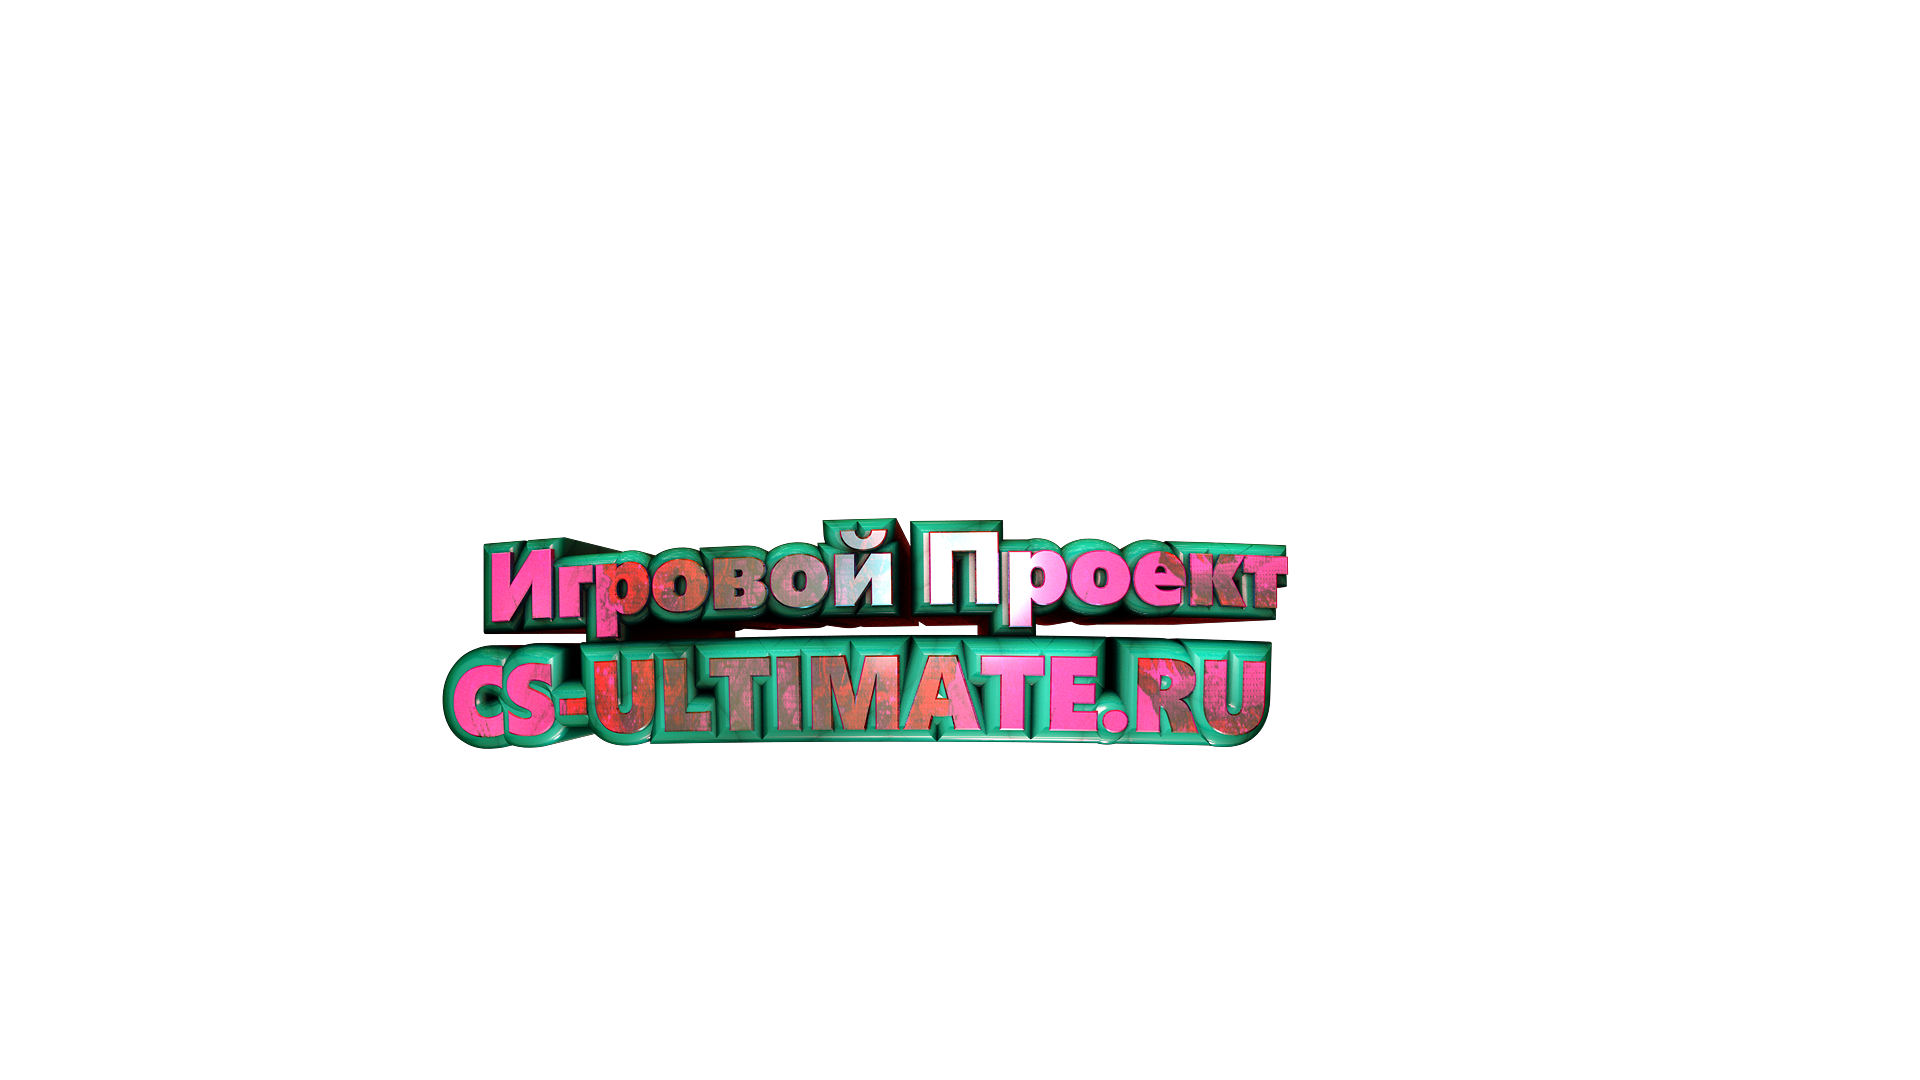 cs-ultimate.ru